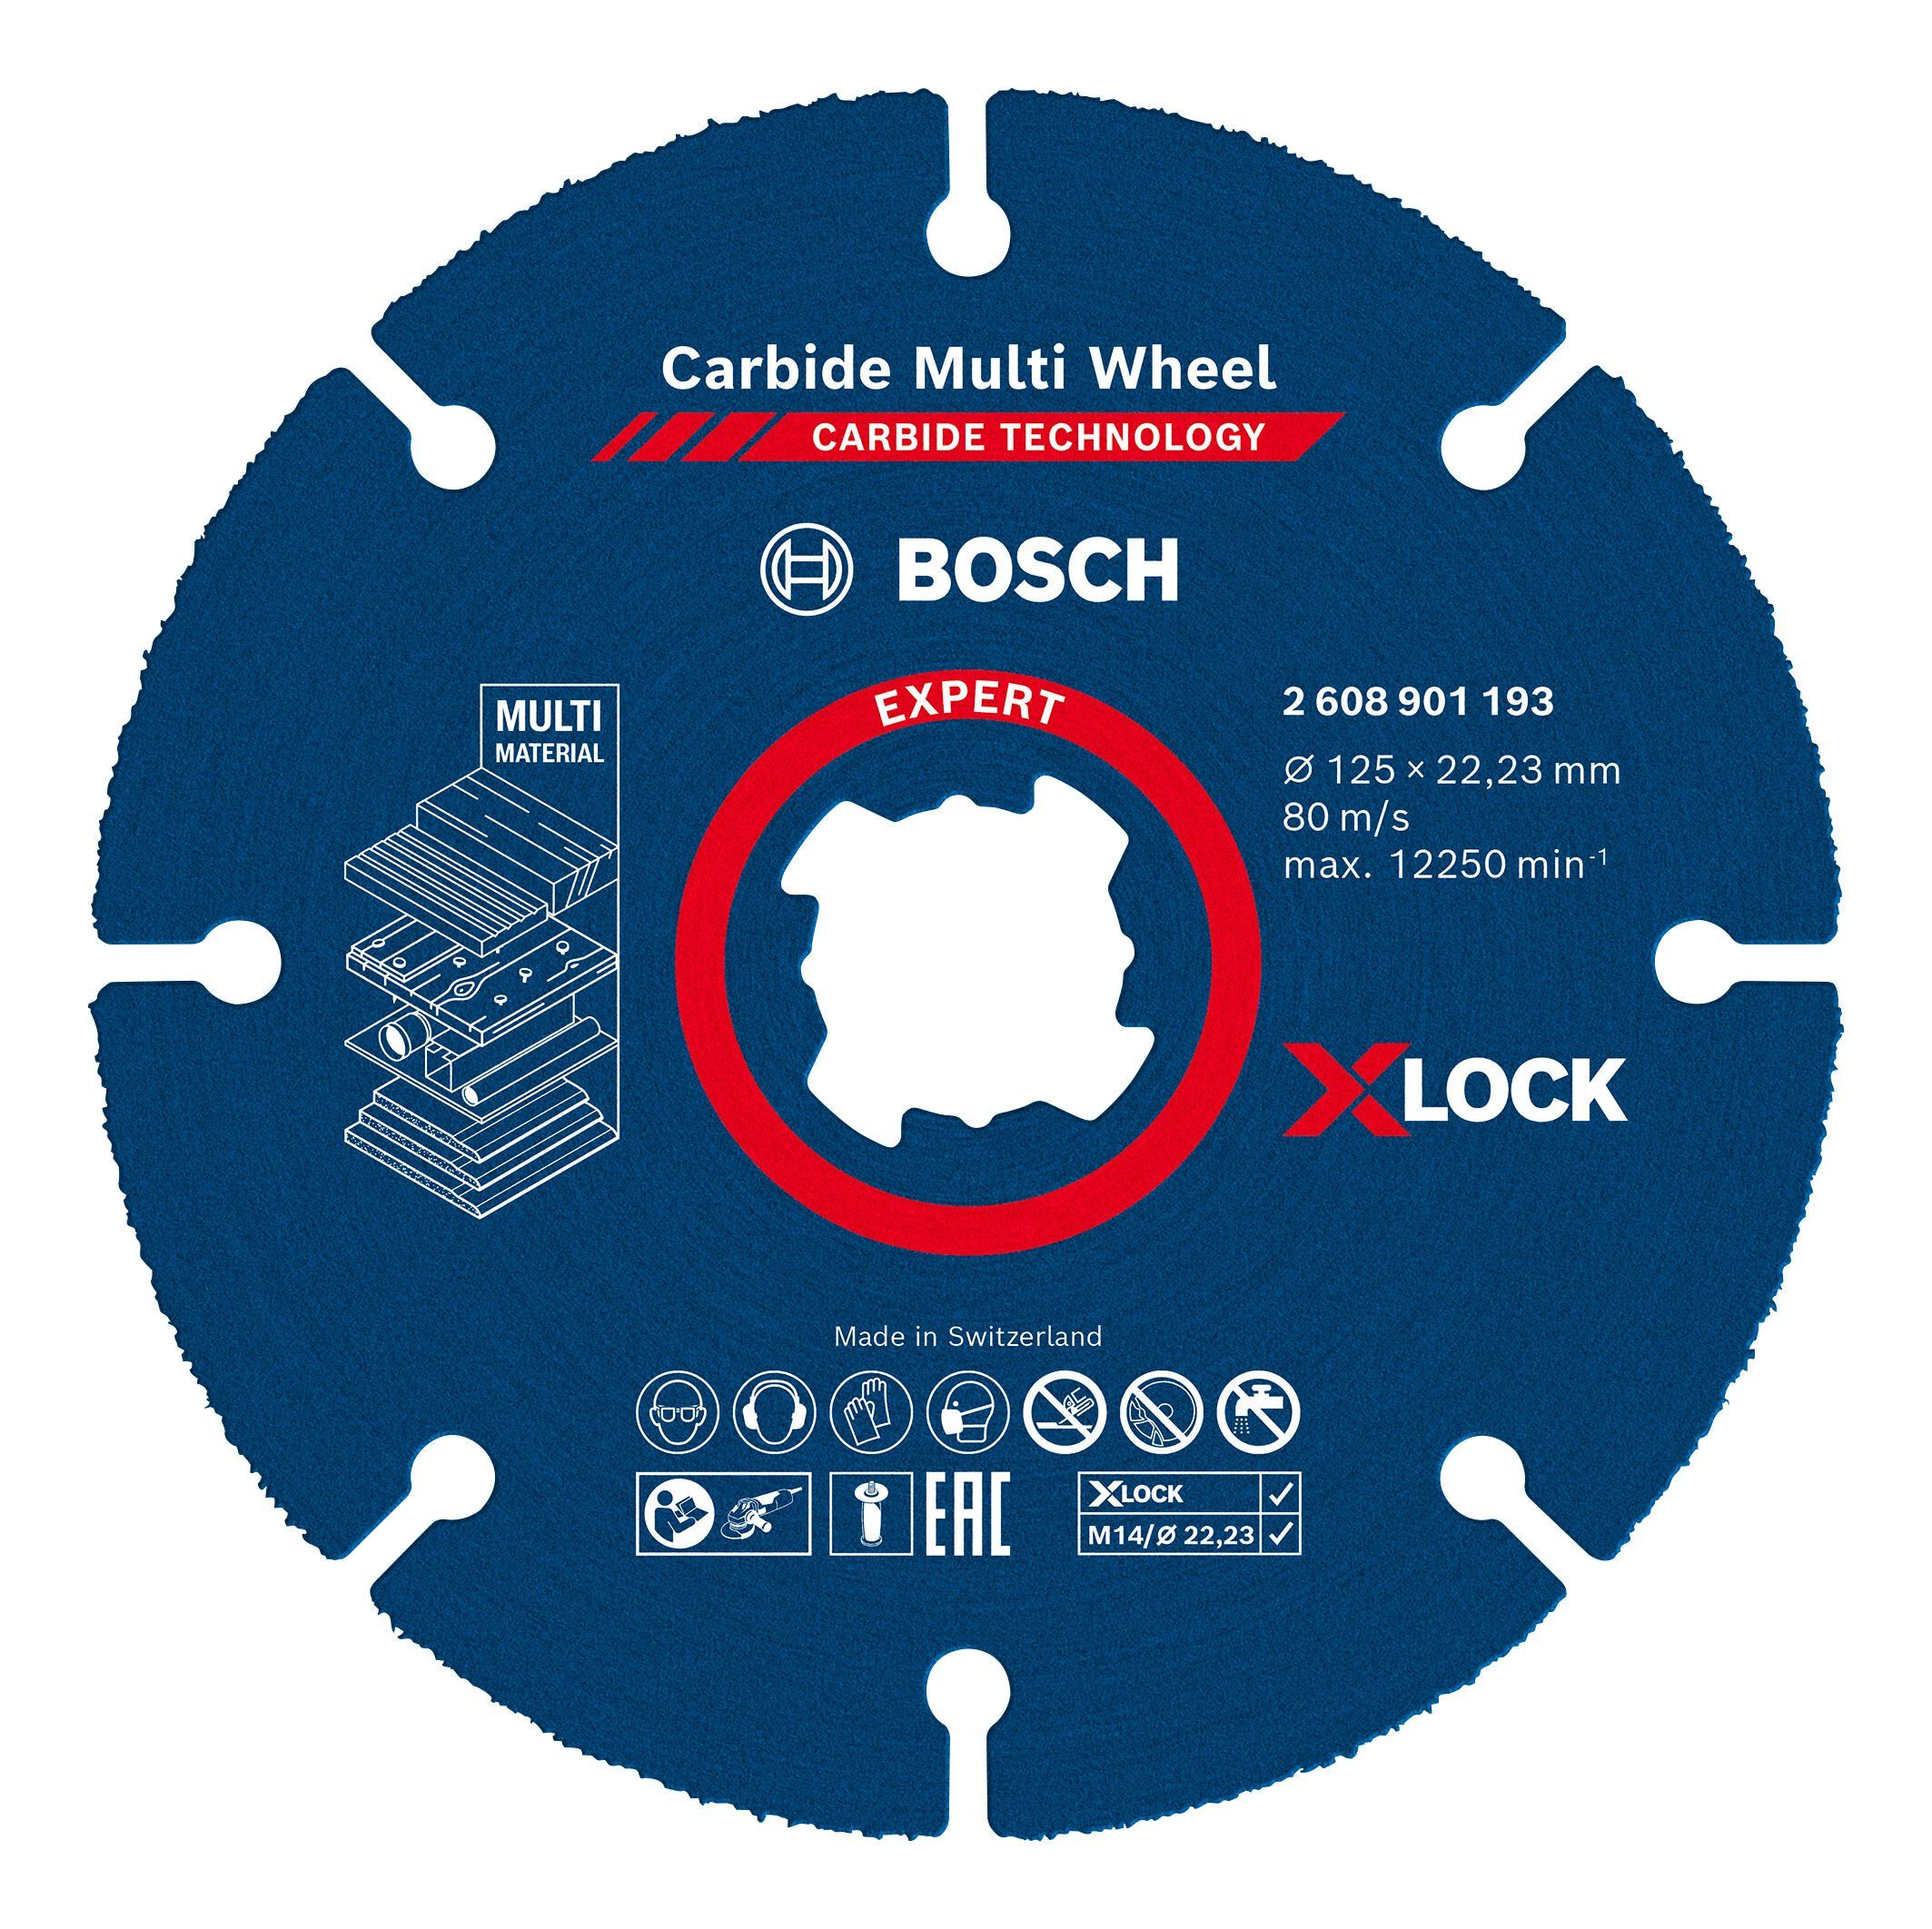 BOSCH Trennscheibe Expert Carbide Multi Wheel, Ø 125 mm, Expert X-LOCK Carbide Multi Wheel - 125 x 22,23 x 1 mm